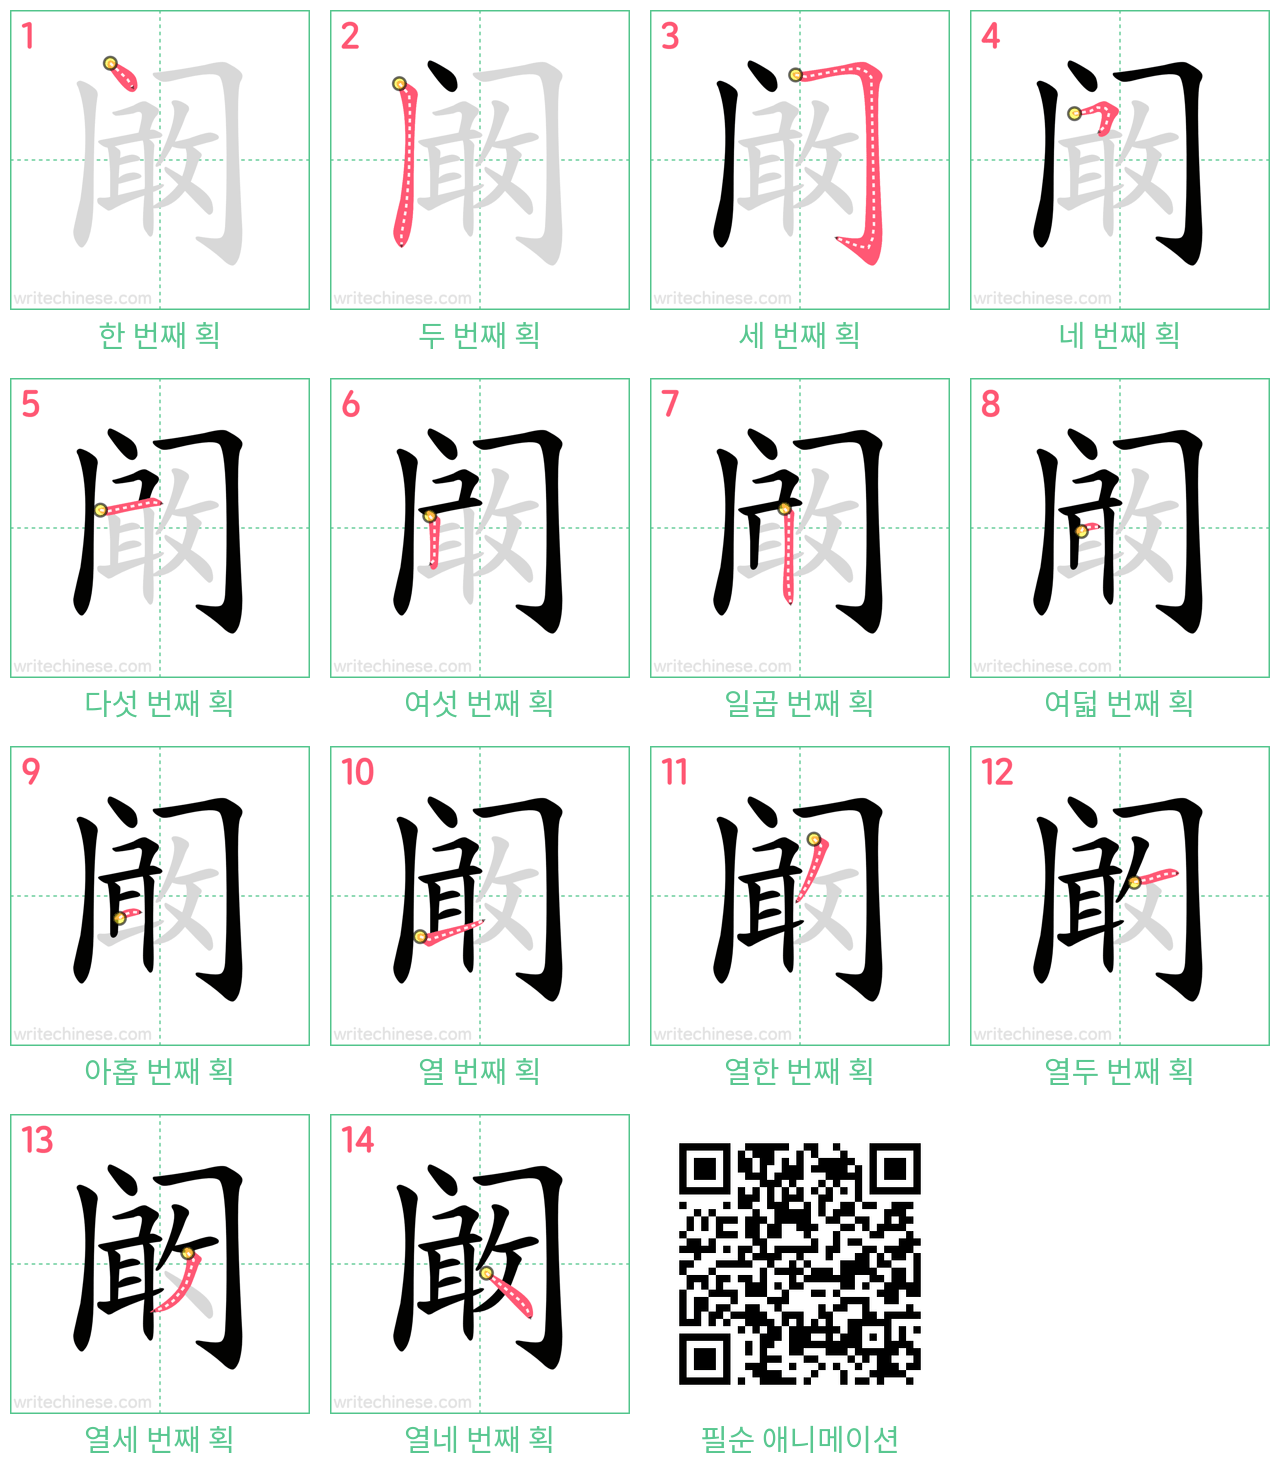 阚 step-by-step stroke order diagrams